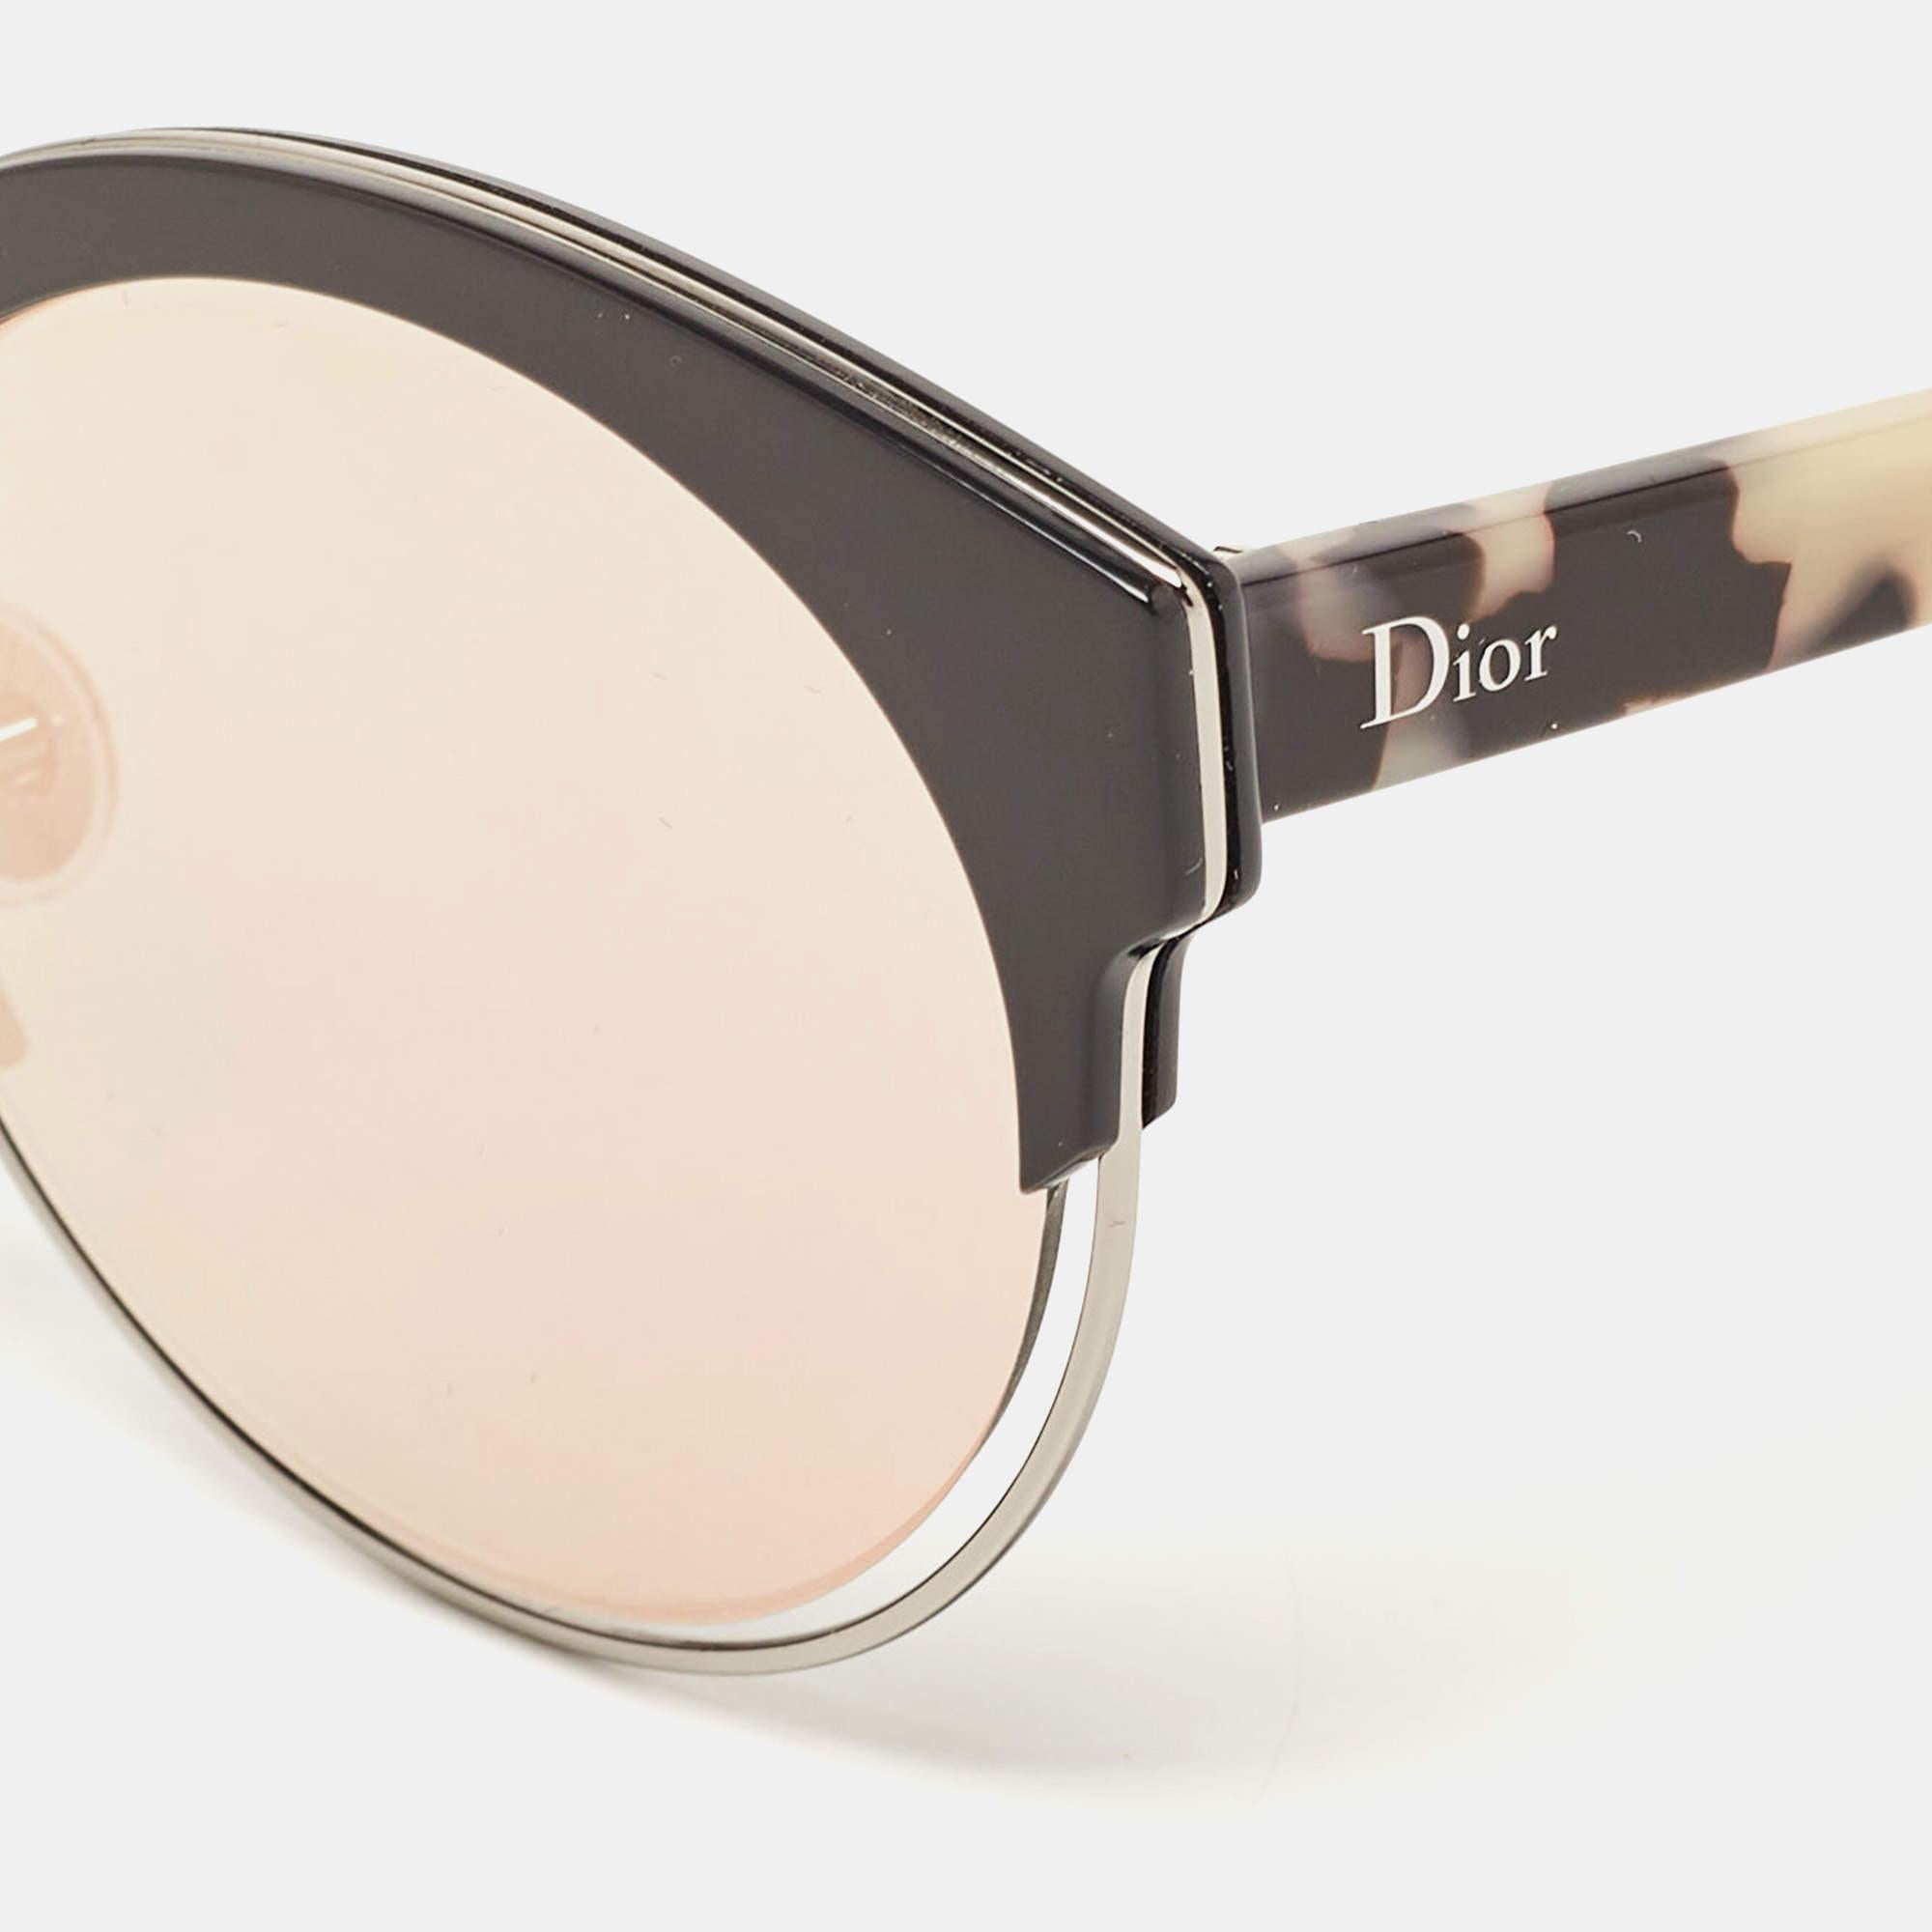 Eine Fashionista wie Sie verdient nur das Beste, wie diese Sonnenbrille von Dior. Diese Sonnenbrille mit dem Schriftzug an den Seiten drückt Ihren Stil eloquent aus. Während Sie mit ihrem Design auffallen, schützen die Gläser Ihre Augen.

Enthält: